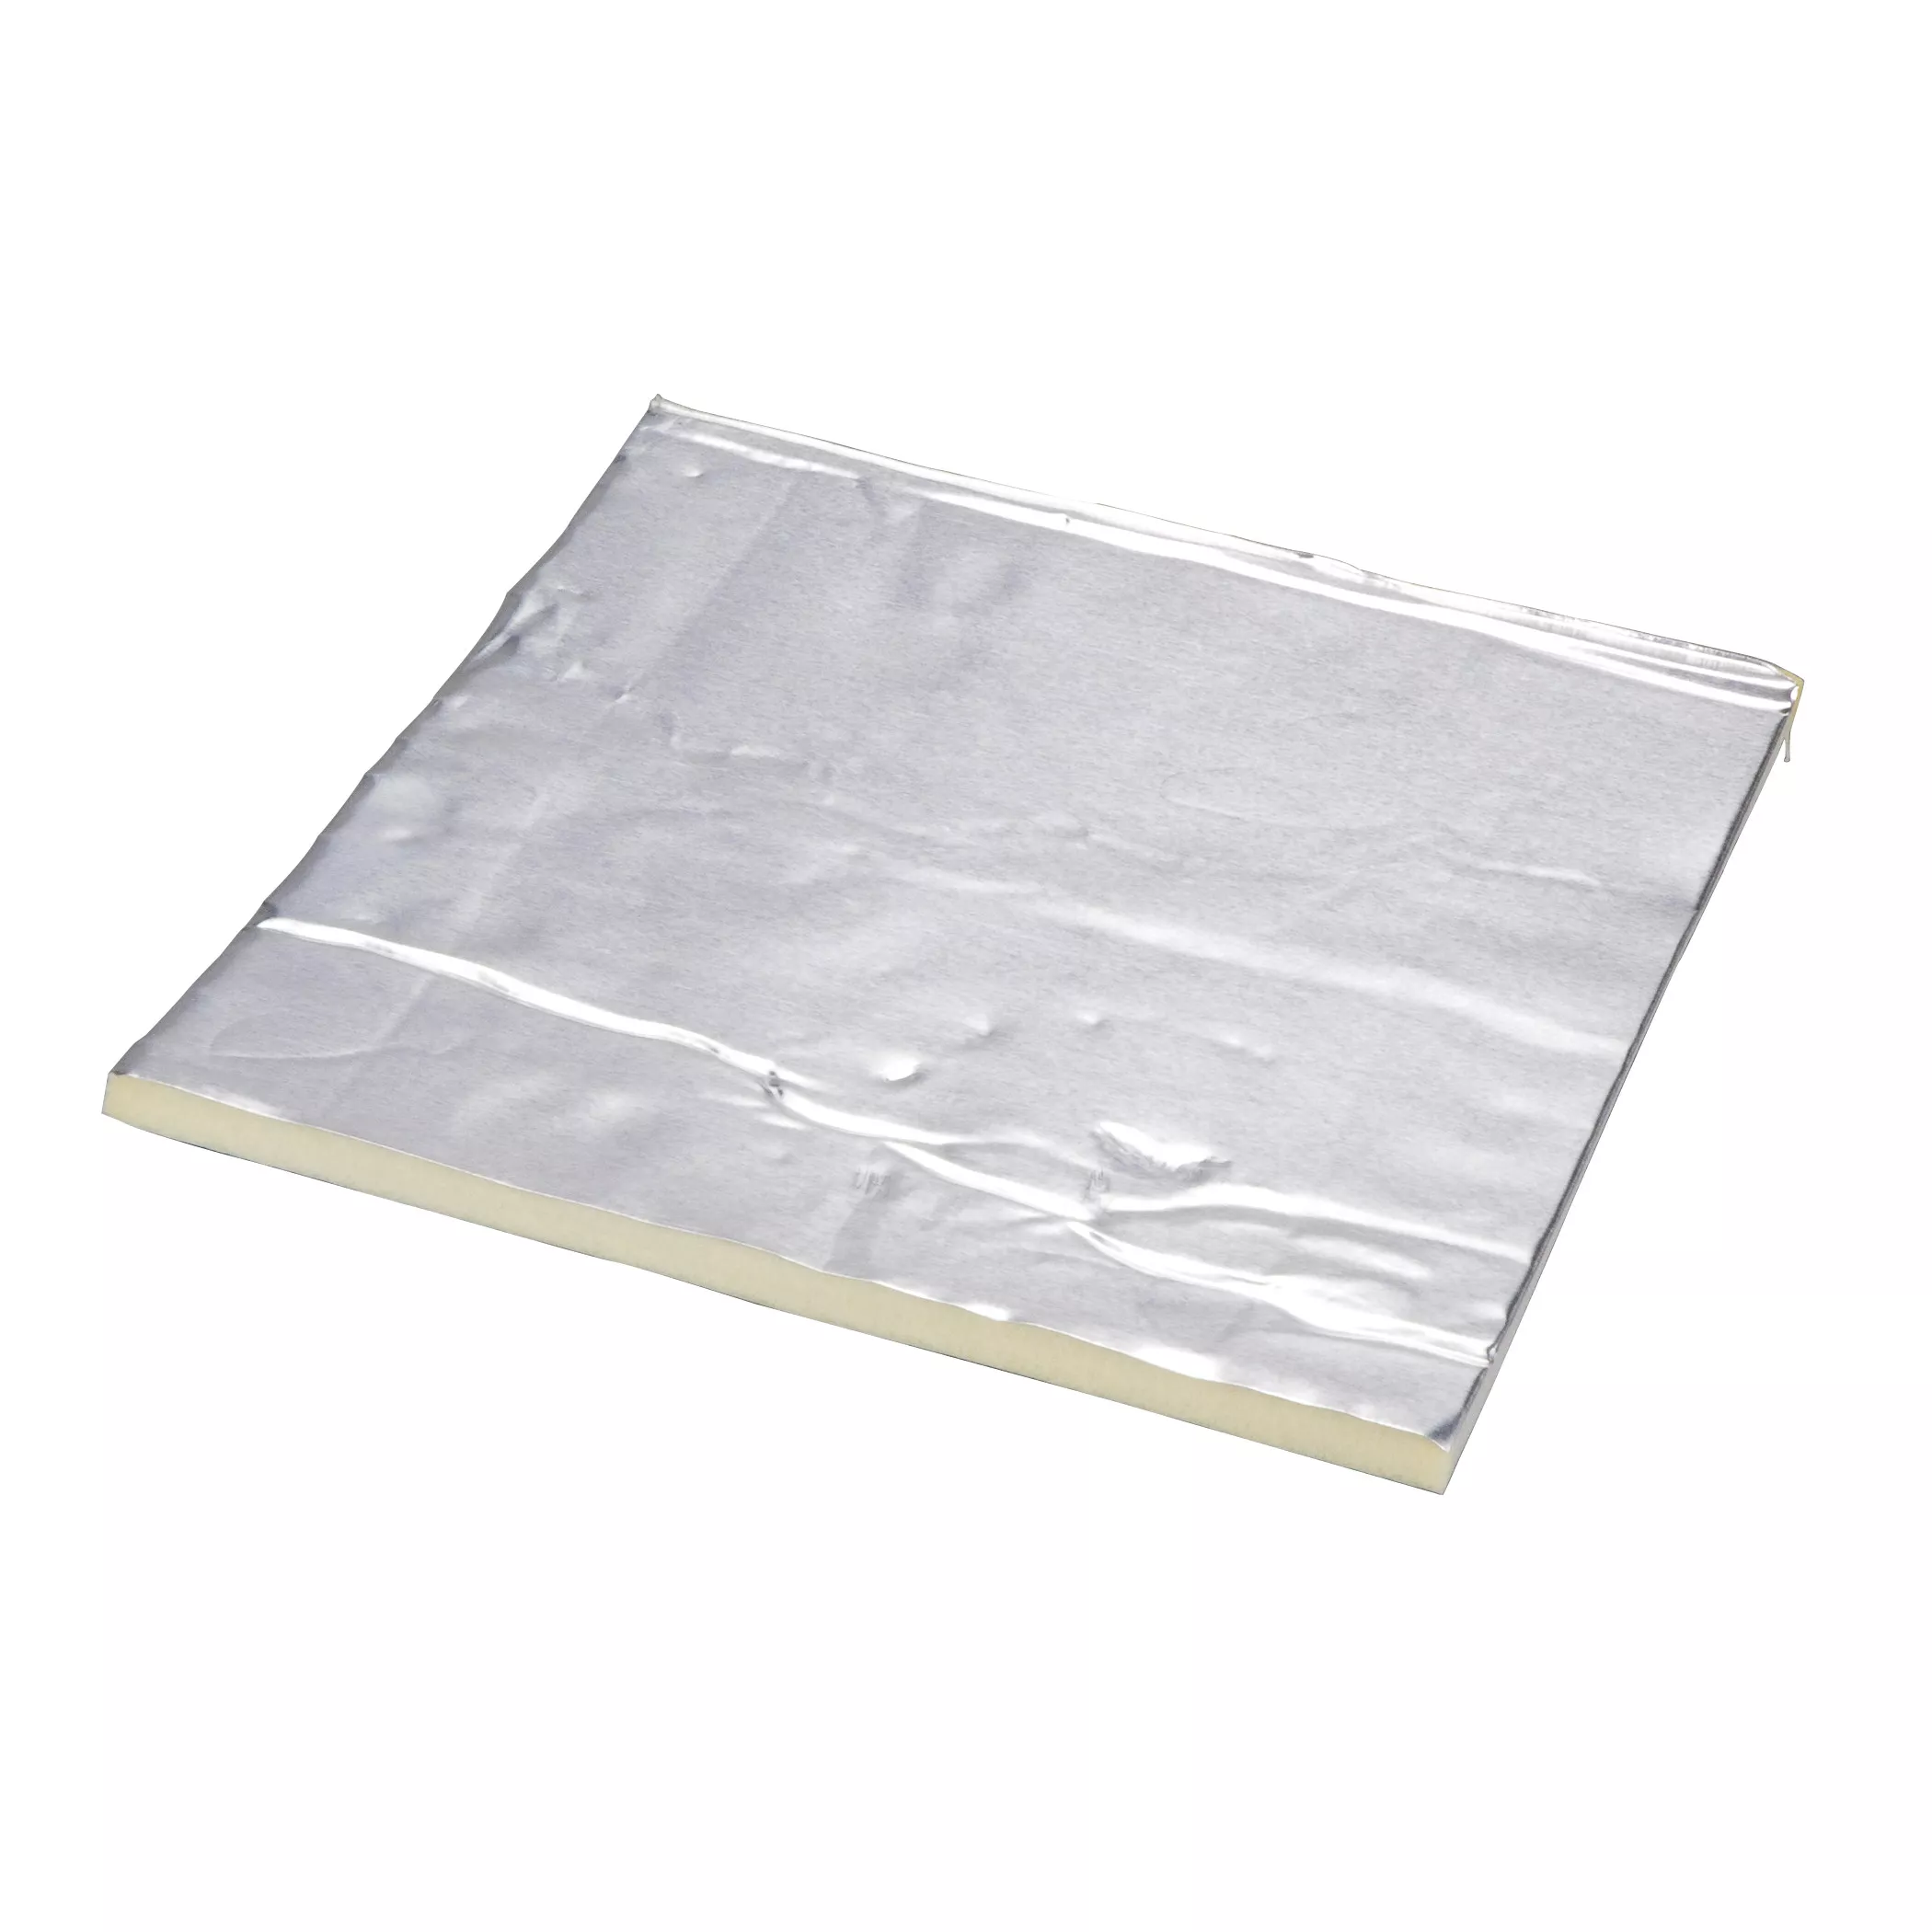 3M™ Damping Aluminum Foam Sheets 4014, Silver, 12 in x 48 in, 250 mil, 1
pack per case (25 sheets per pack)